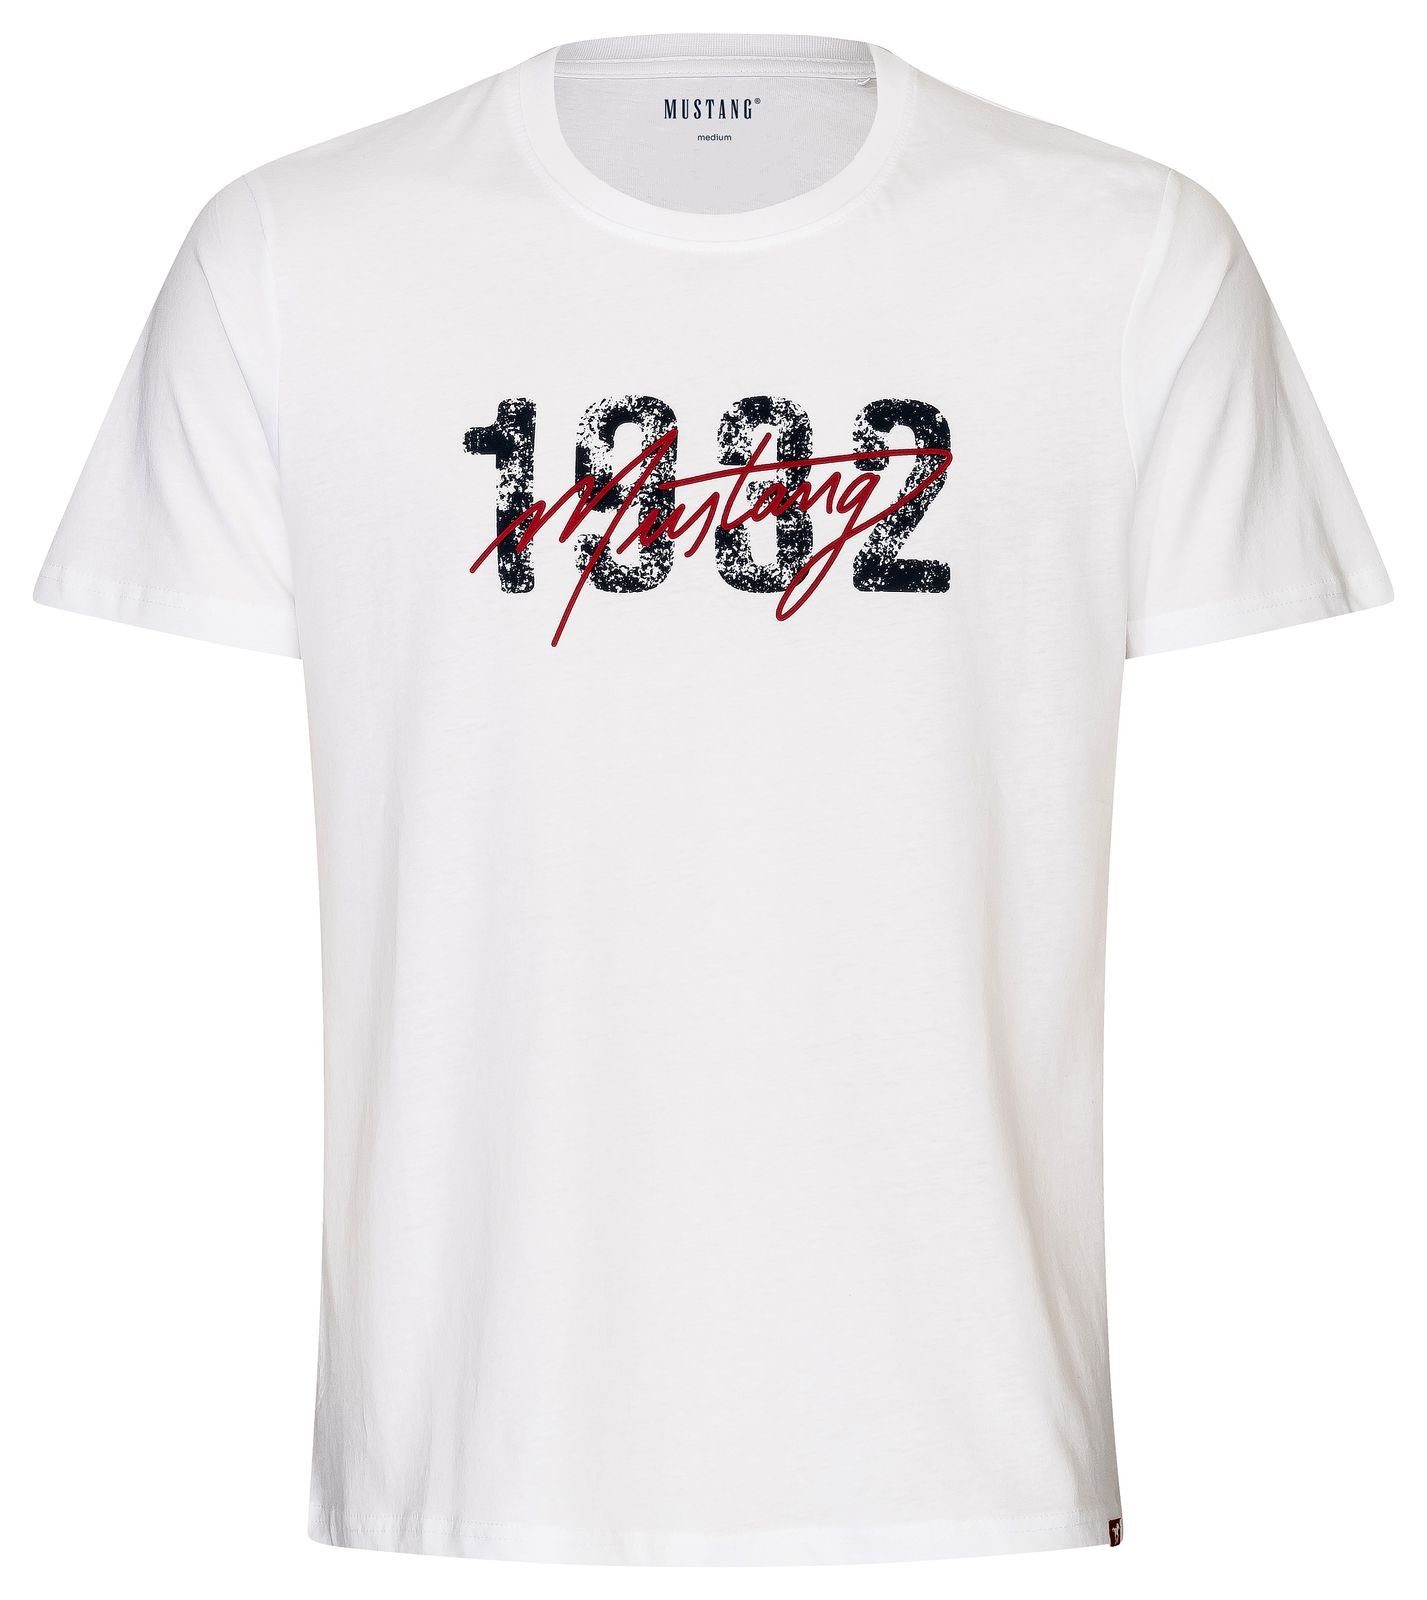 MUSTANG T-Shirt Lounge Shirt Hemd T-Shirt rotem Kontraststreifen und Mustangbranding weiß